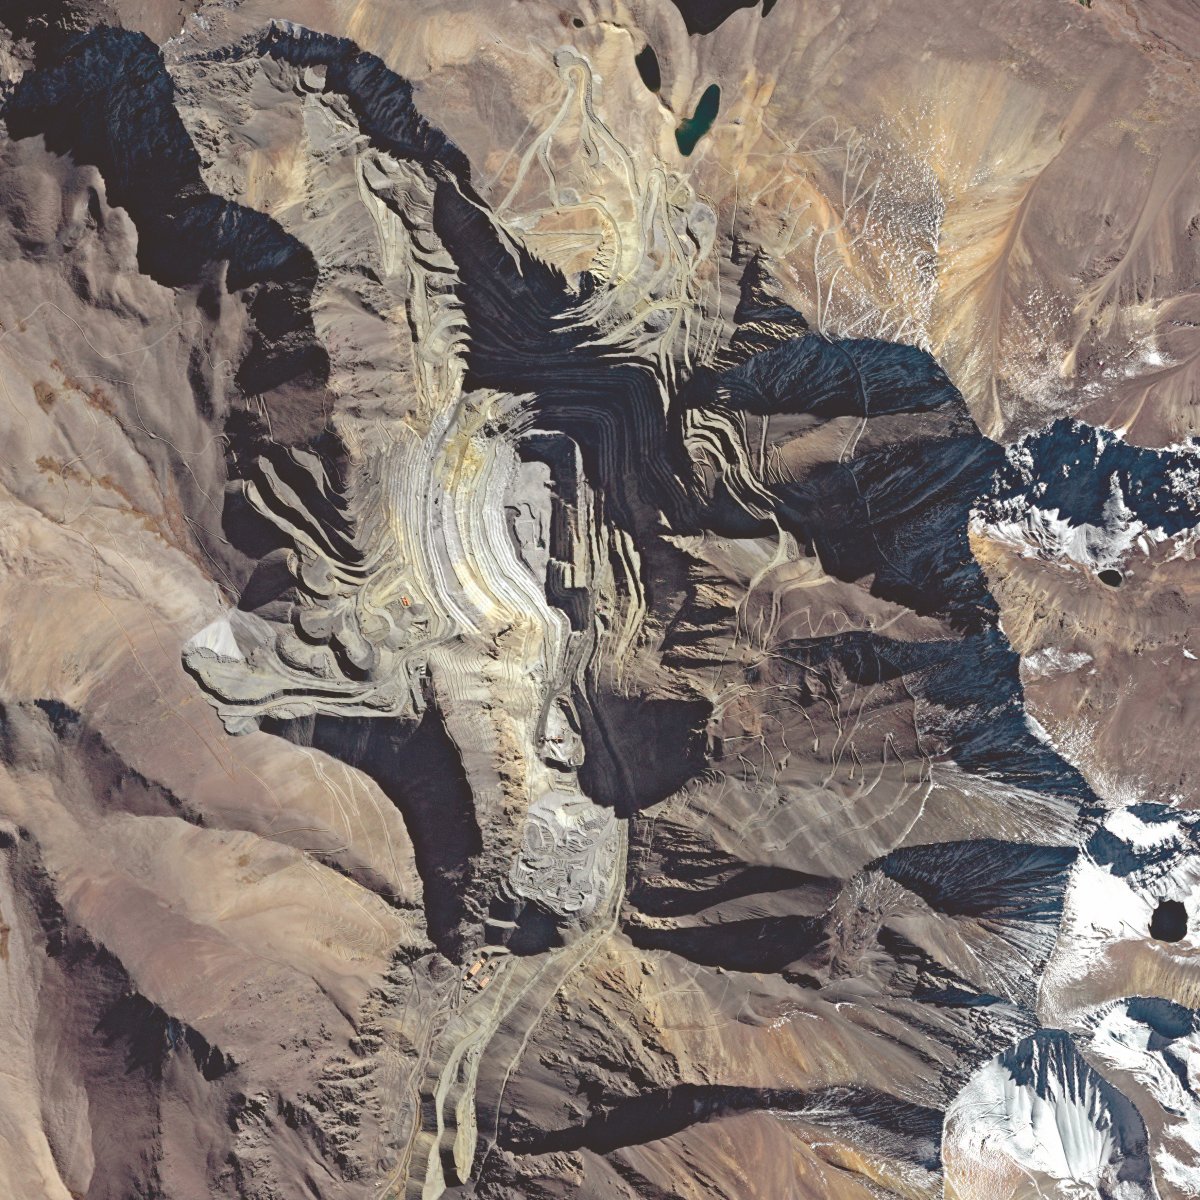 La mine de Los Pelambres au Chili vue par le satellite Formosat-2